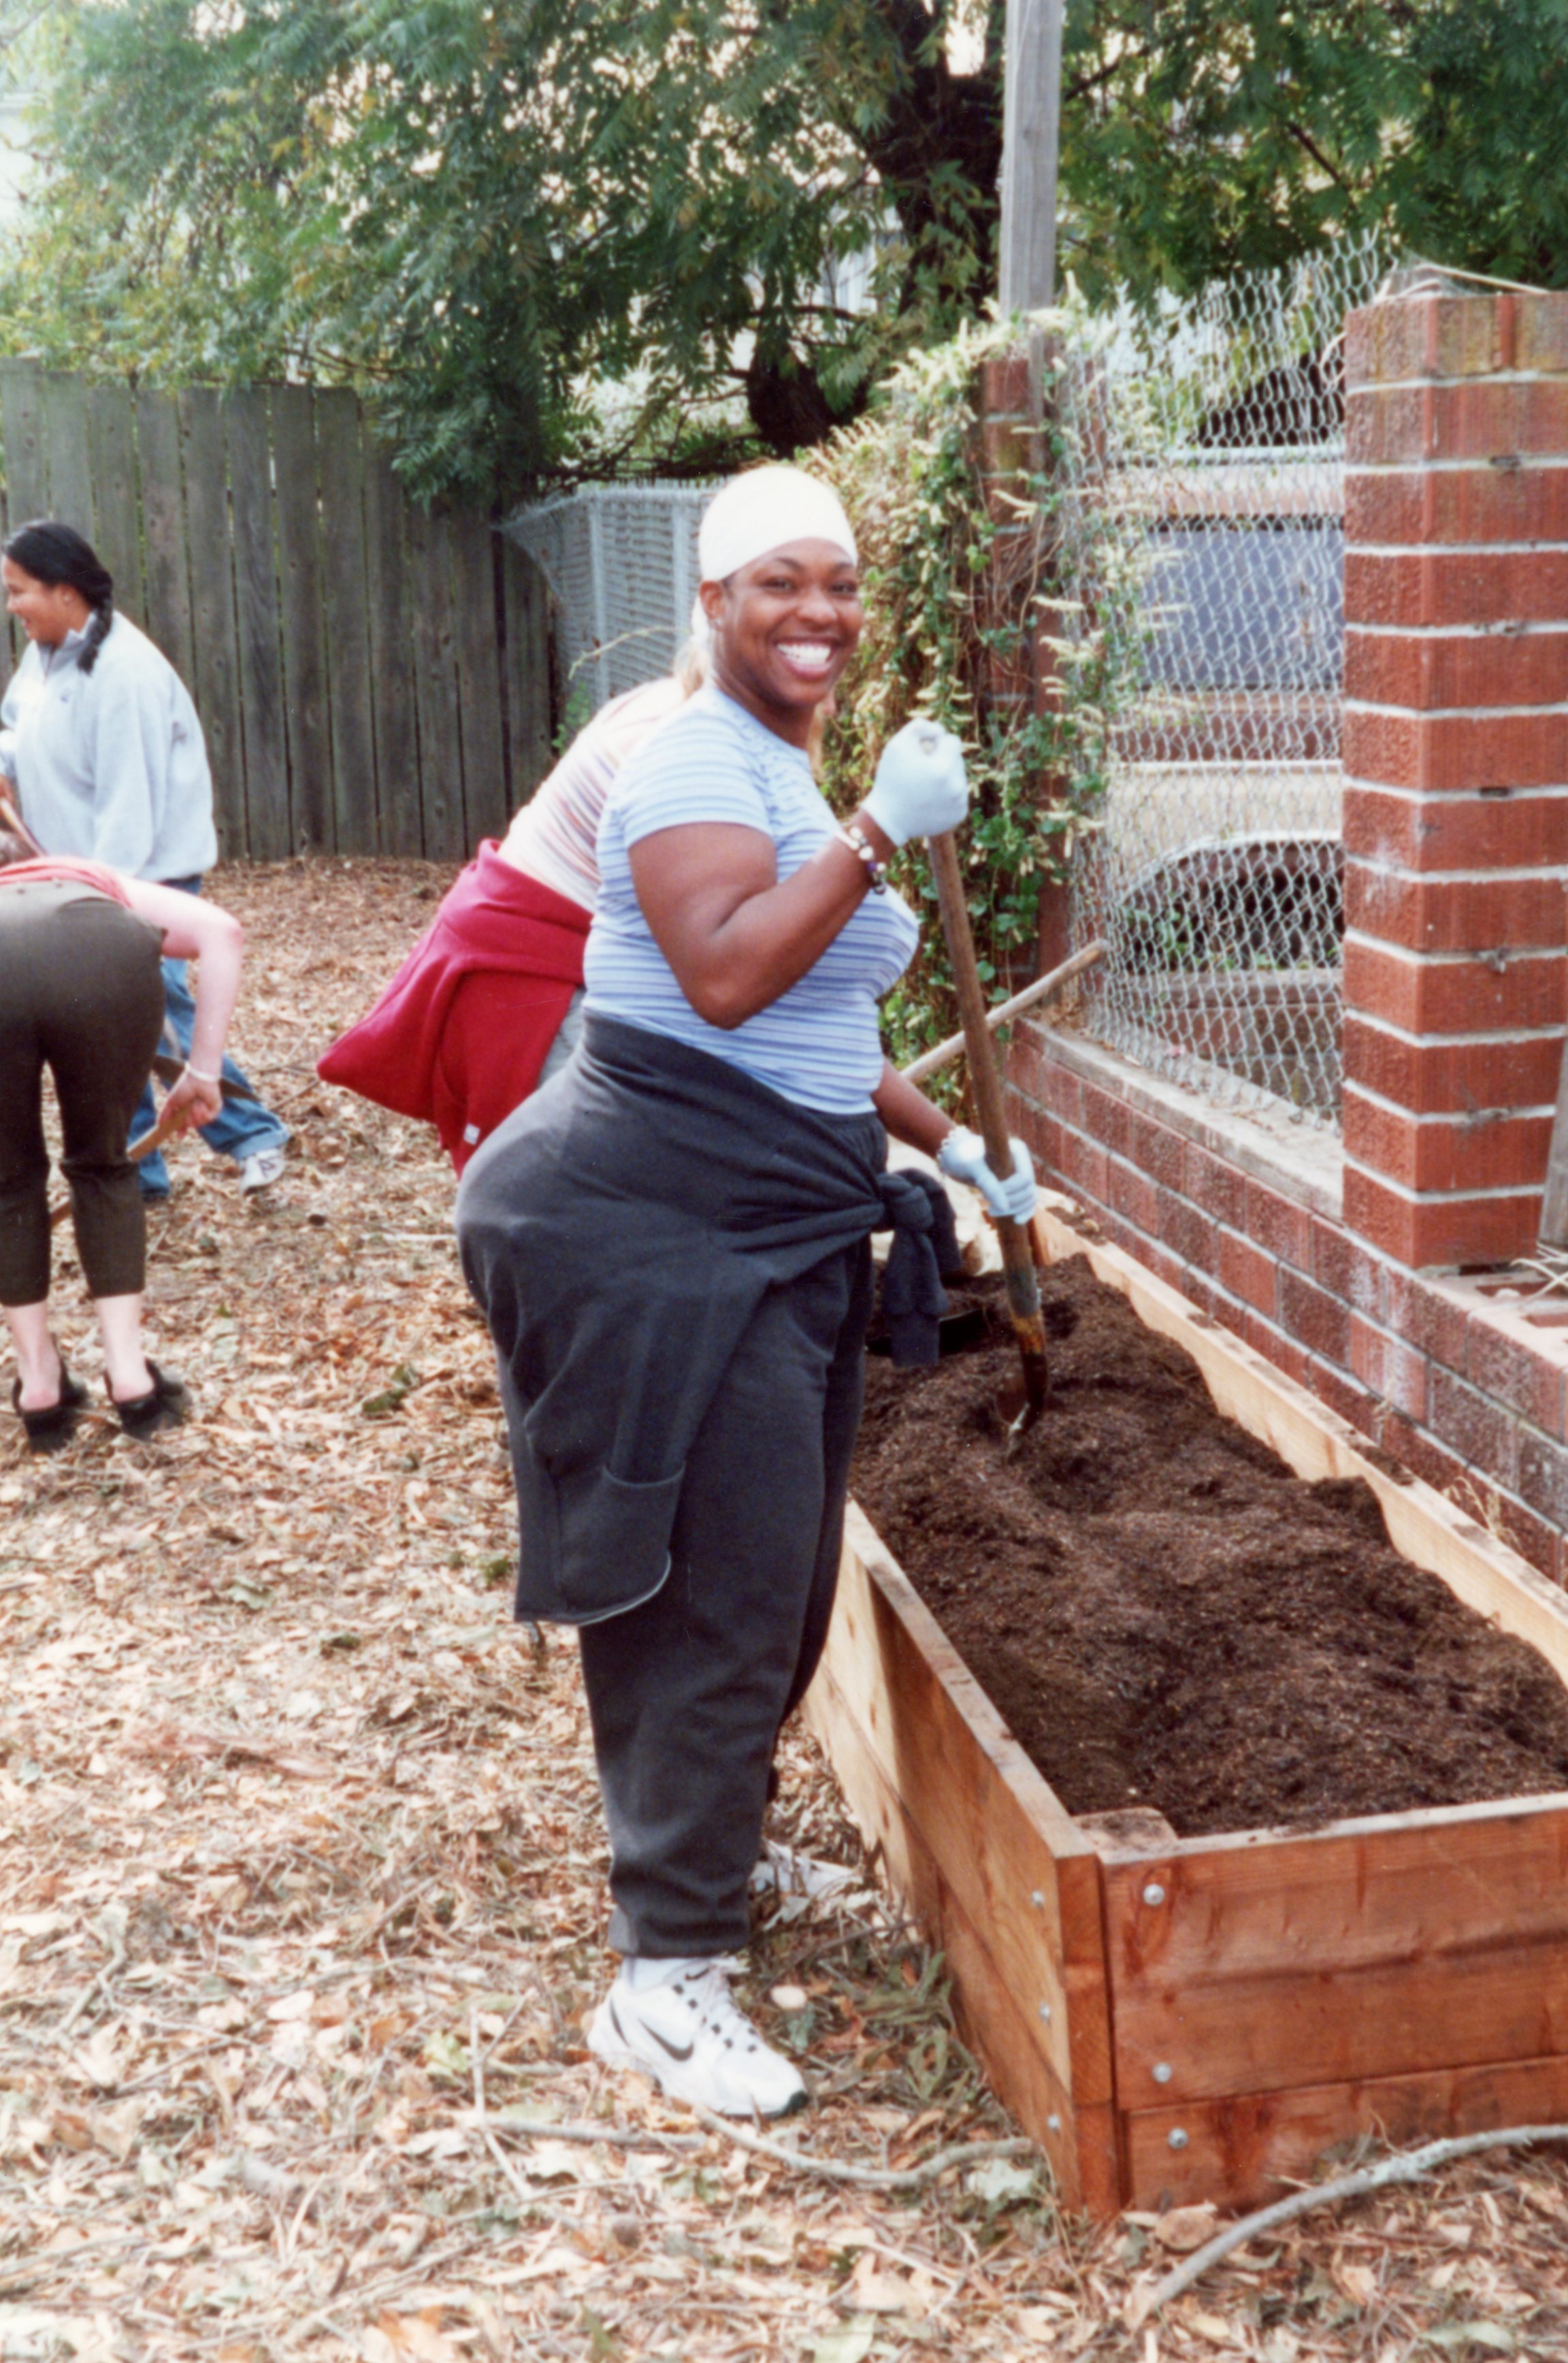   ArtEsteem volunteer cultivating the garden at 3278 West Street.  